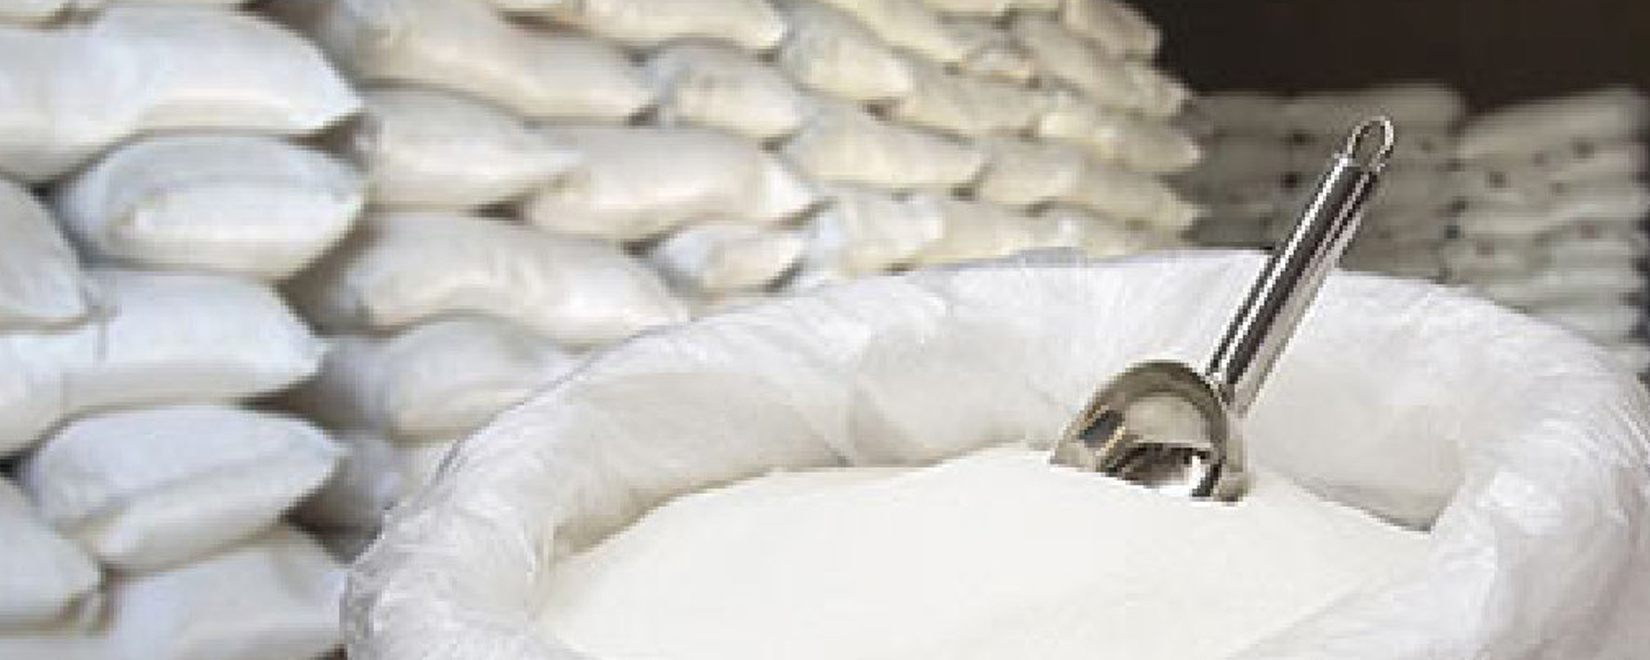 Рост цен на сахар из-за опасений по поводу погоды и запрета на экспорт сахара в Индии